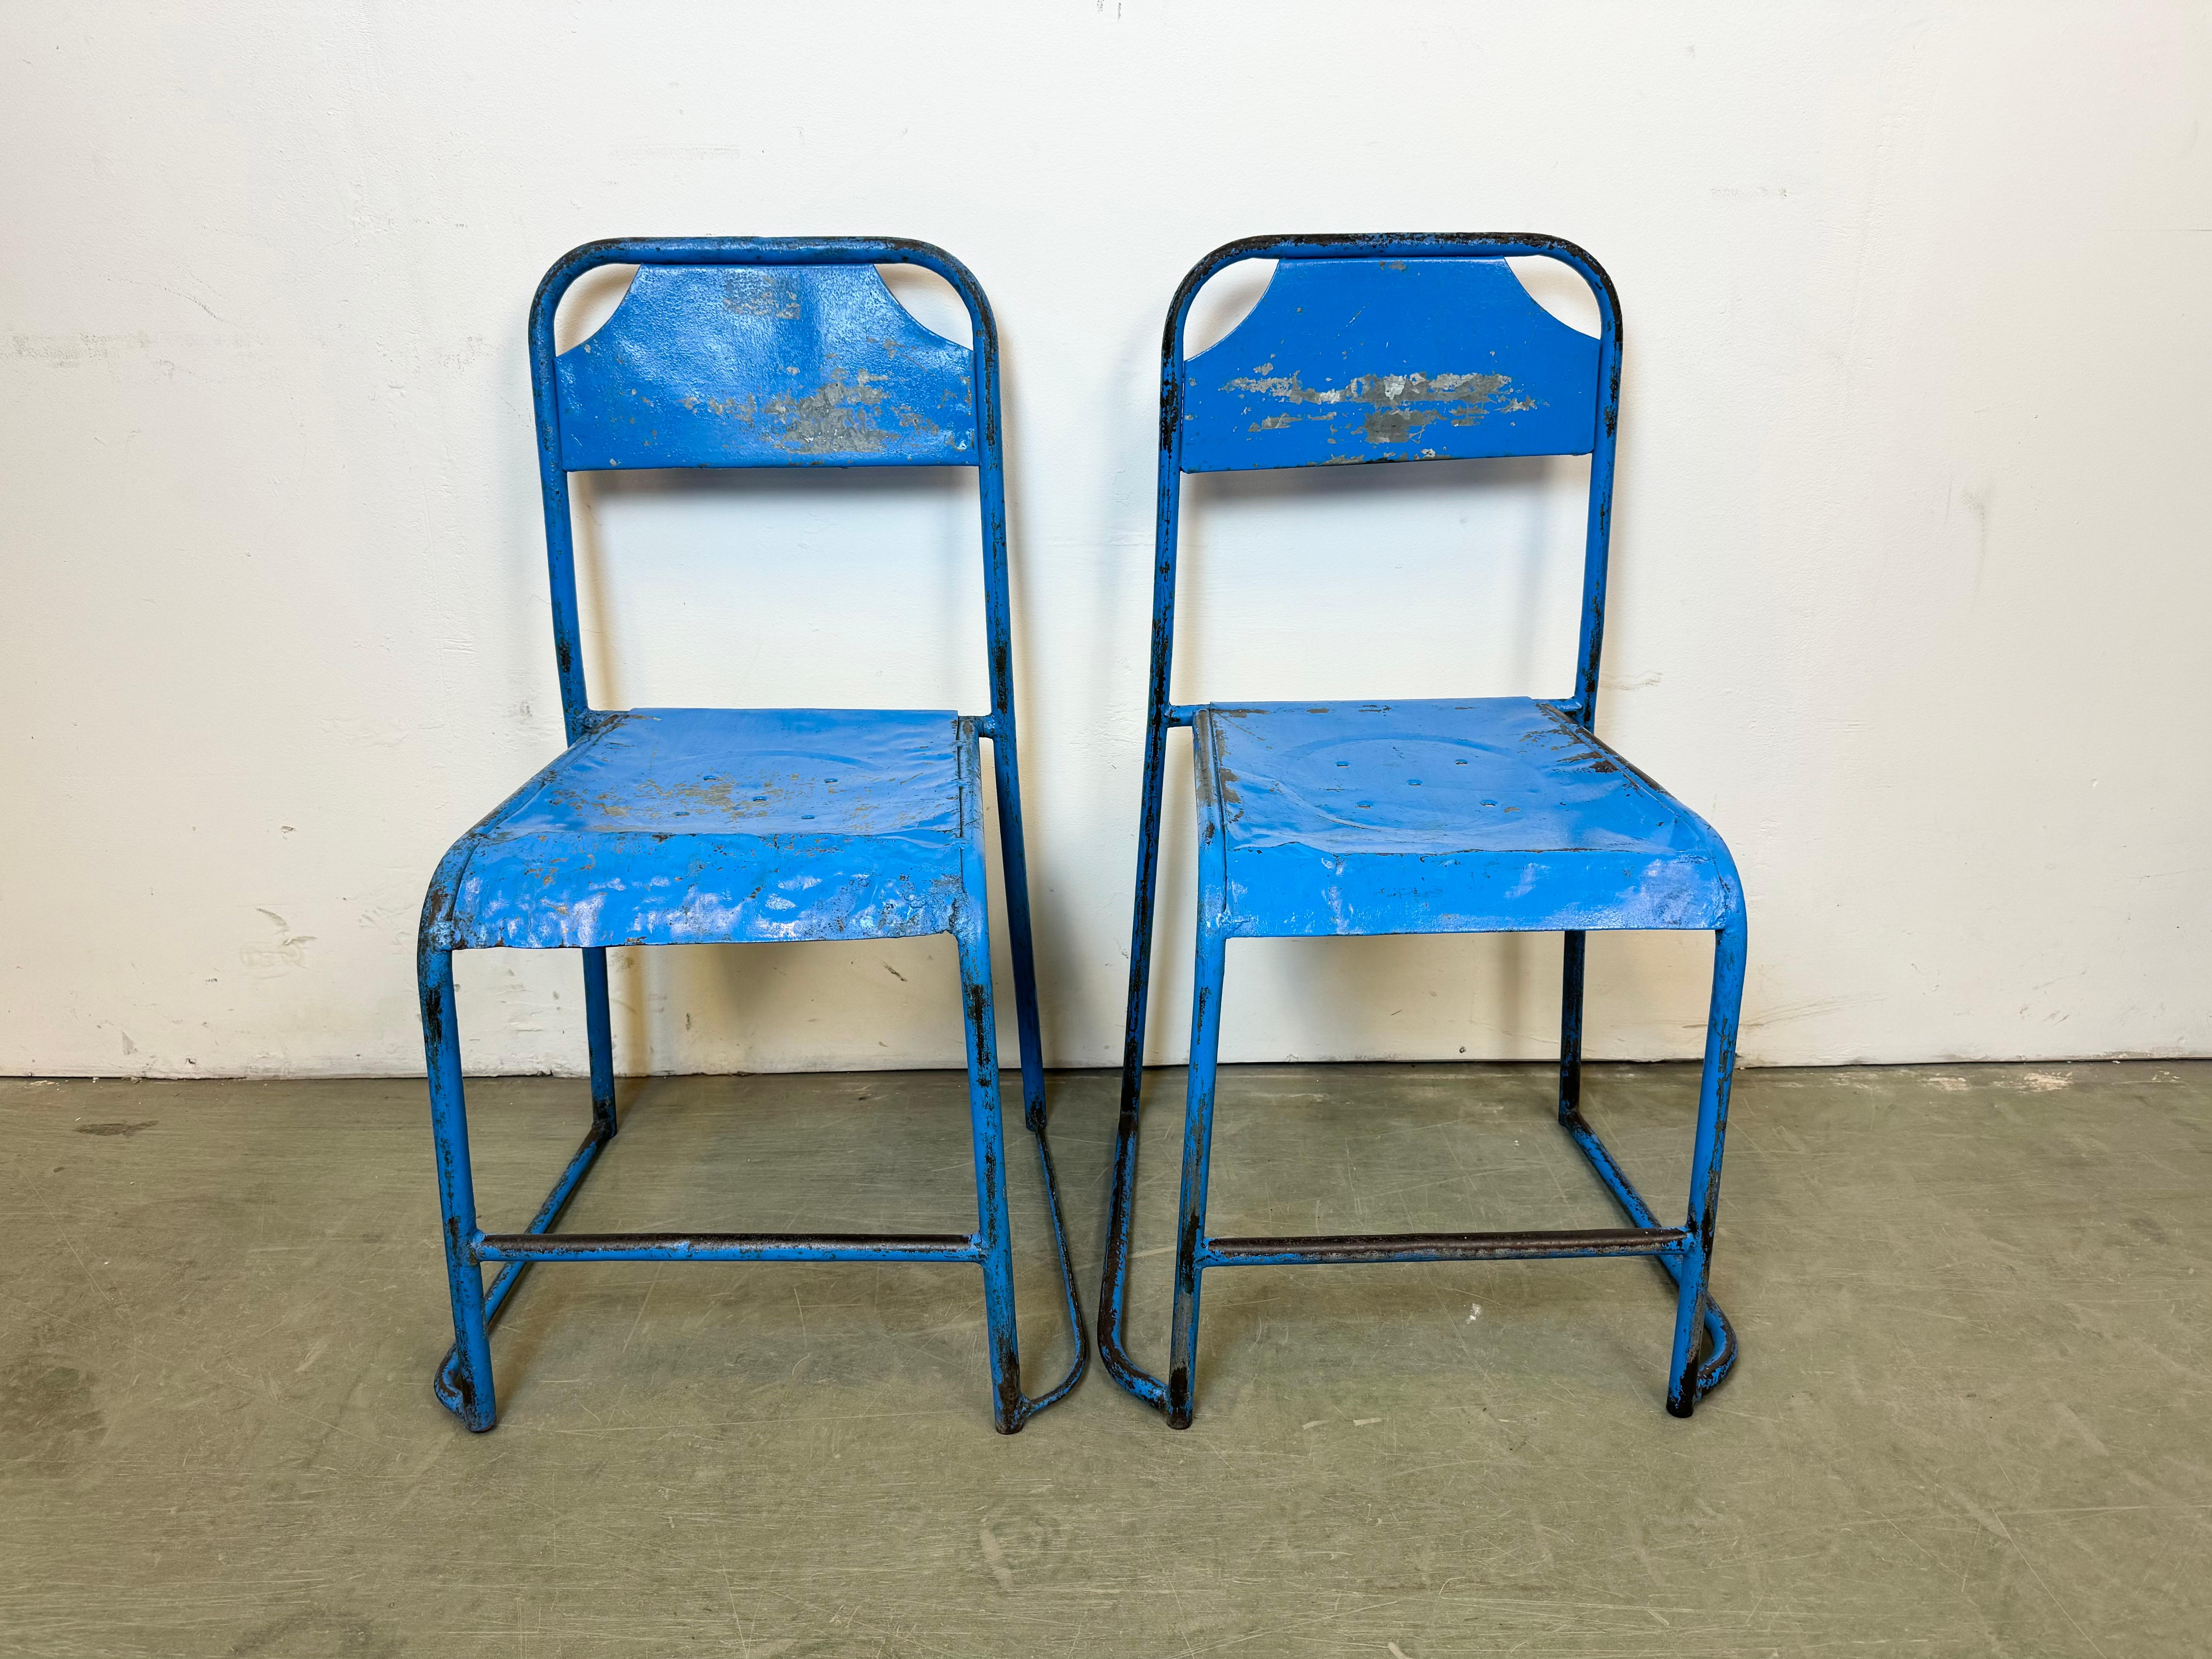 - Vintage Industrial Eisen Stuhl
- Hergestellt in der ehemaligen Tschechoslowakei in den 1950er Jahren
- Das Gewicht des Stuhls beträgt 4 kg.